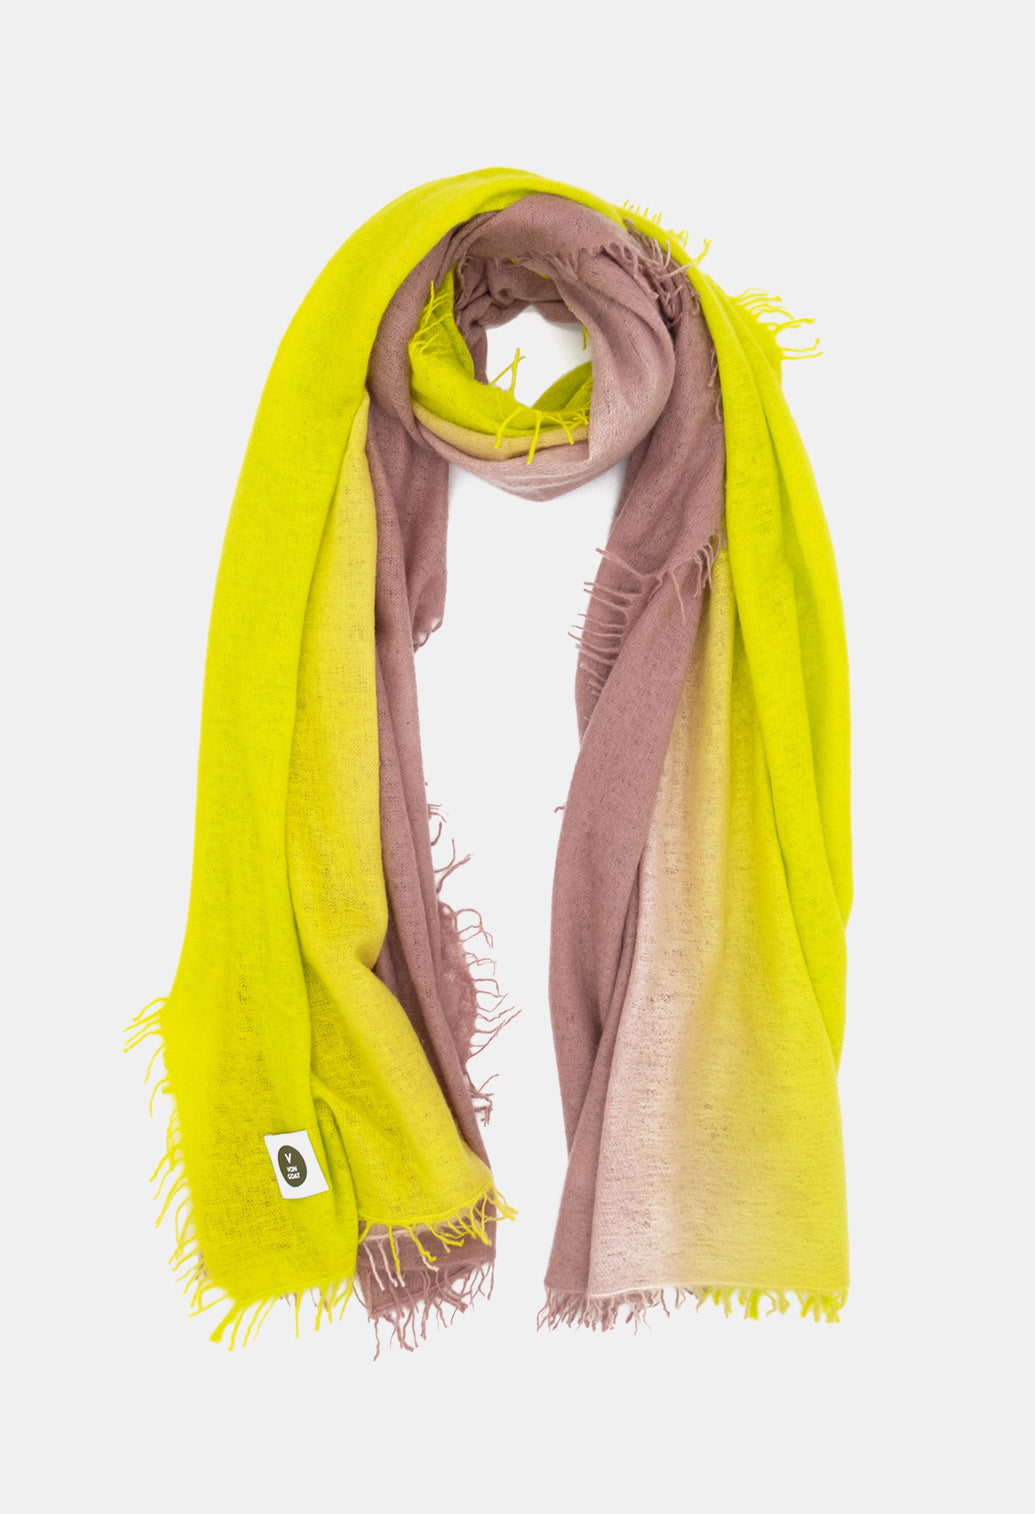 V Von Goat Kaschmir-Schal mit Fransen im Tiedye-Stil in den Farben Neon Gelb und Braun aus reiner Cashmere-Wolle auf weißem Untergrund.